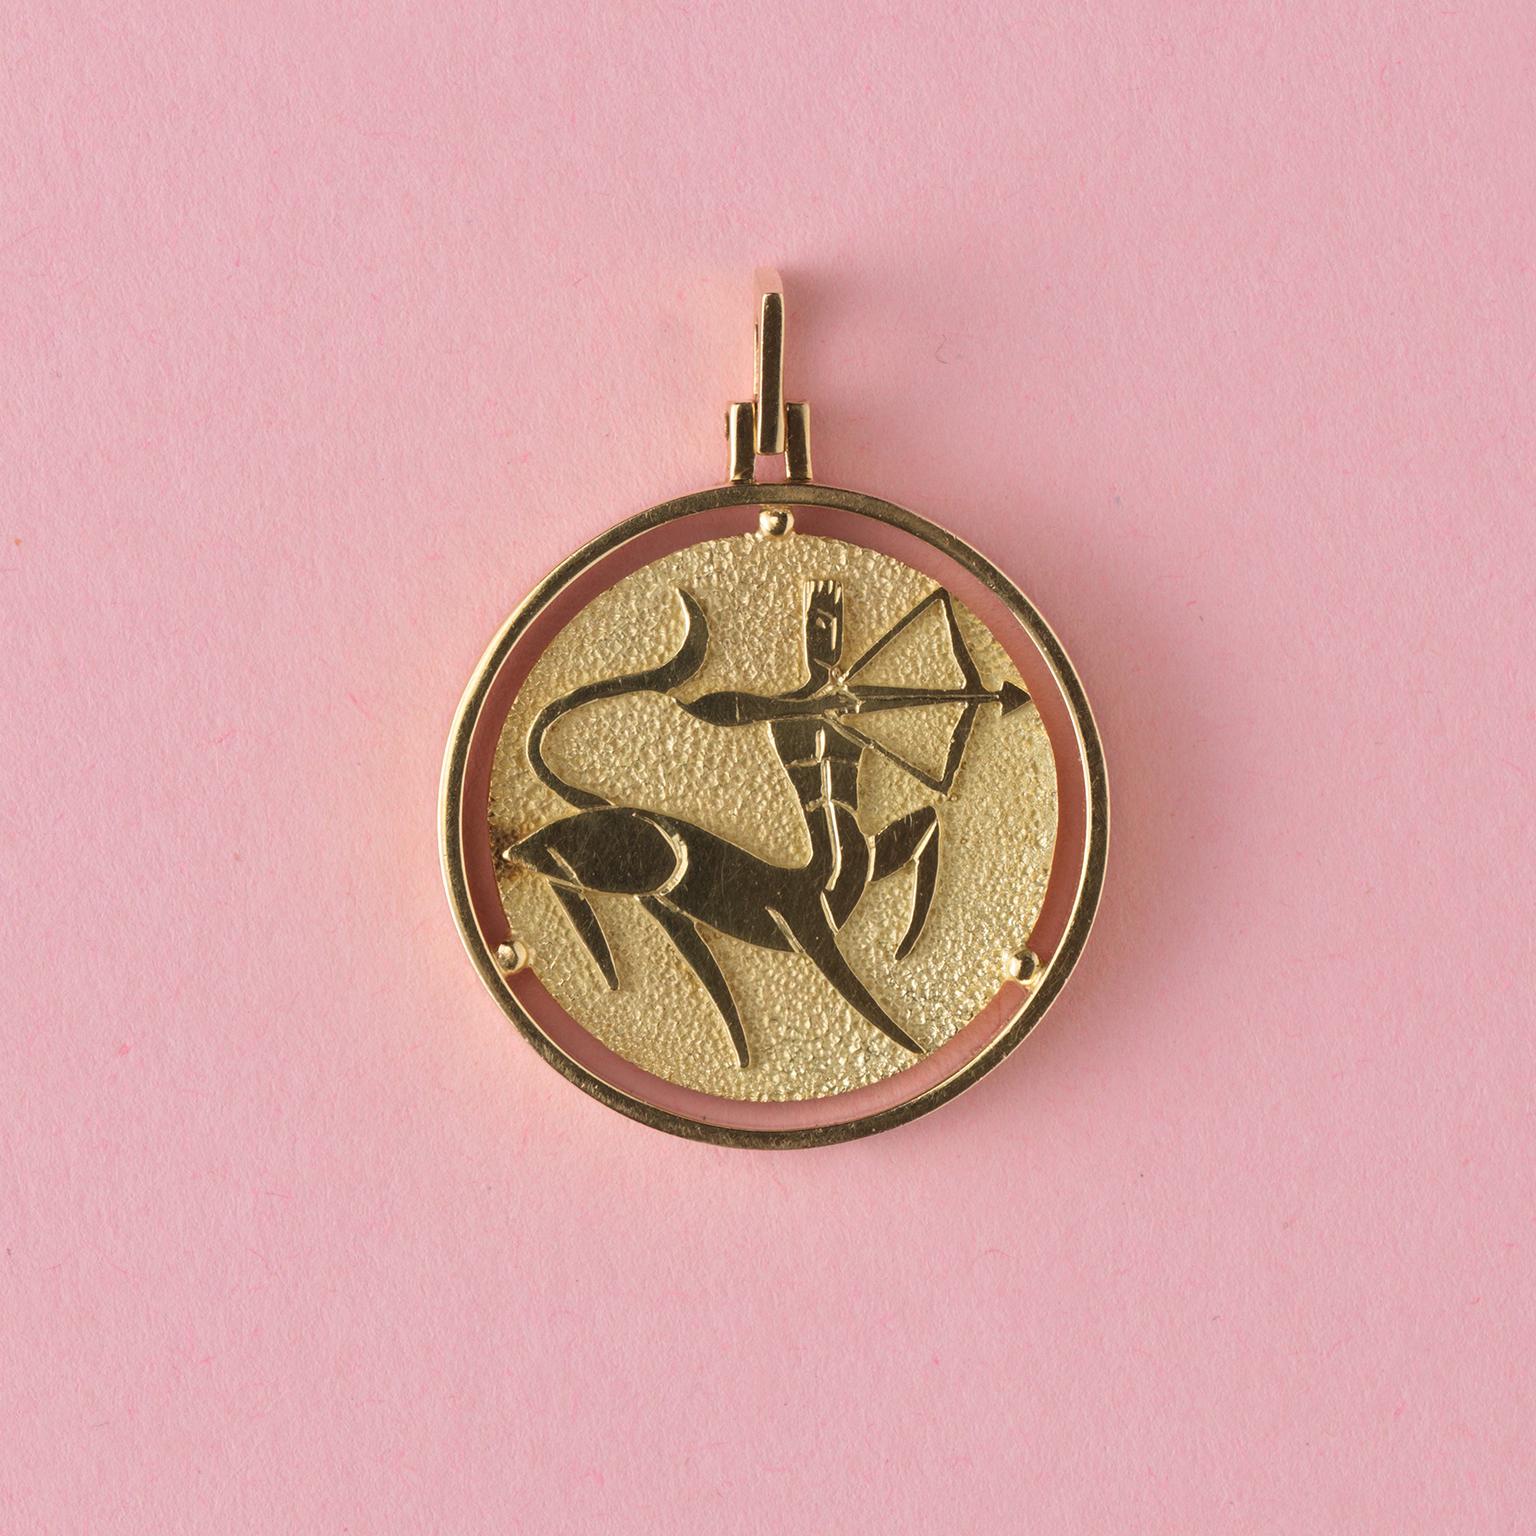 Pendentif en or 18 carats en forme de sagittaire, avec le même centaure abstrait de chaque côté.
vendus au détail par Steltman entre 1924 et 1957.

poids : 12,2 grammes
dimensions : 3,7 x 2,8 cm